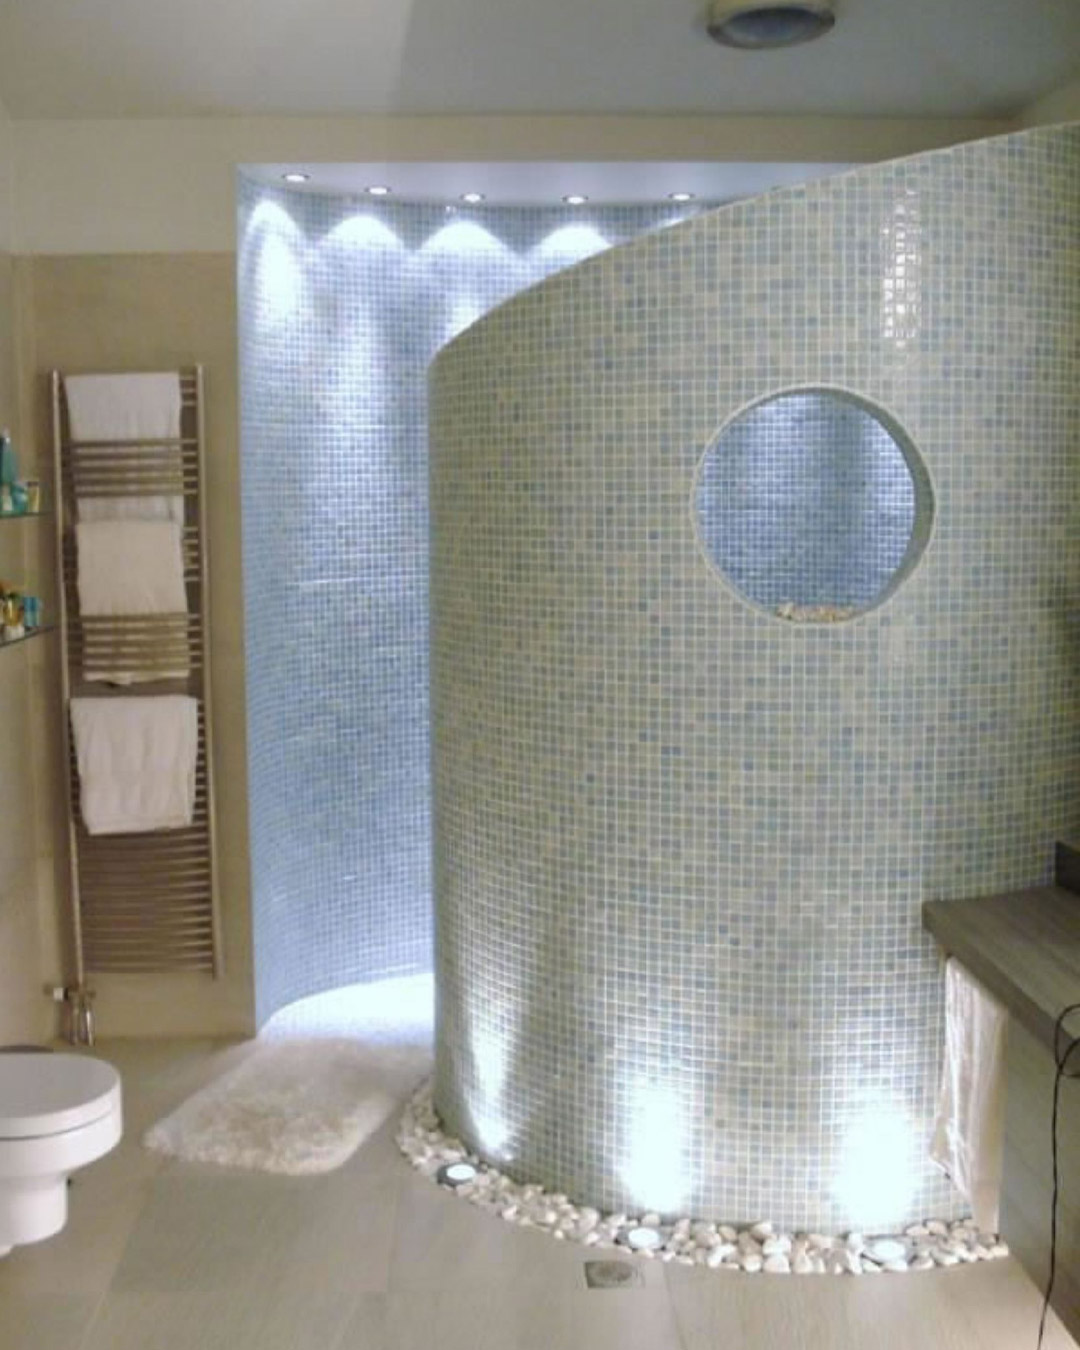 Modern Luxury Shower Designs - Best modern shower design inspiration